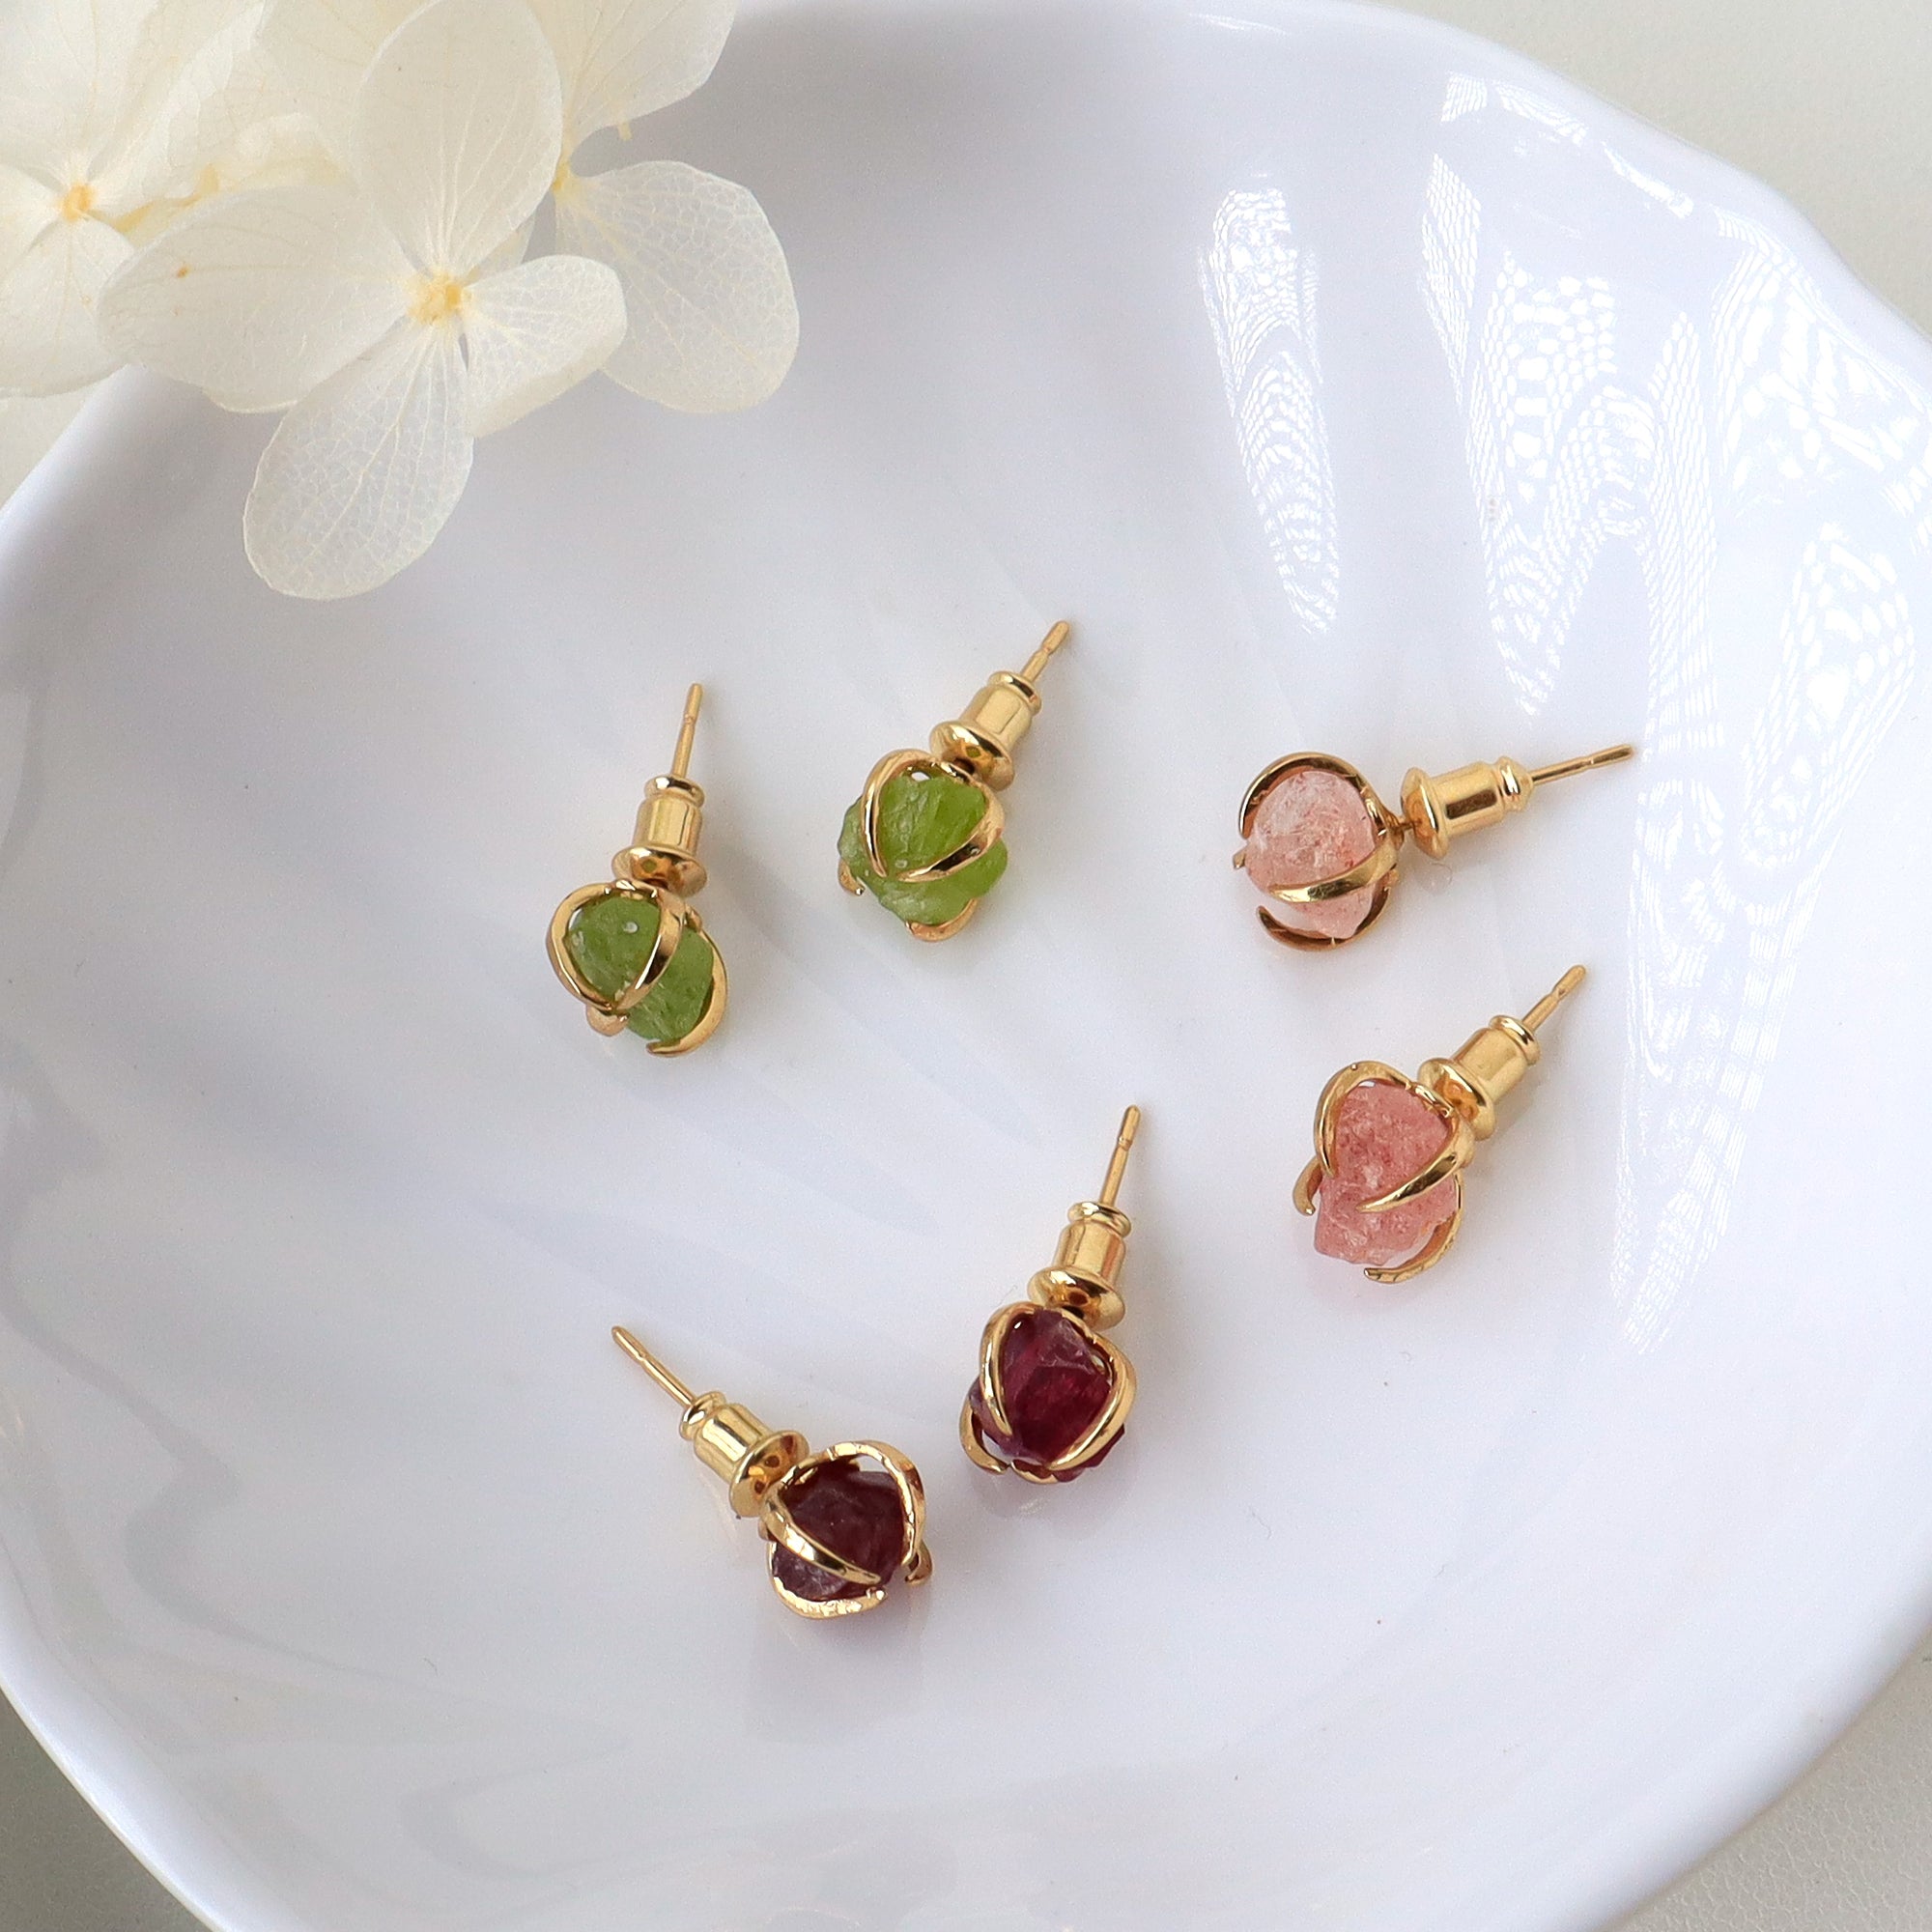 Gold Plated Claw Natural Birthstone Stud Eartrings, July Strawberry Quartz Earrings, August Peridot Earrings, January Garnet Earrings, Healing Gemstone Jewelry BT009